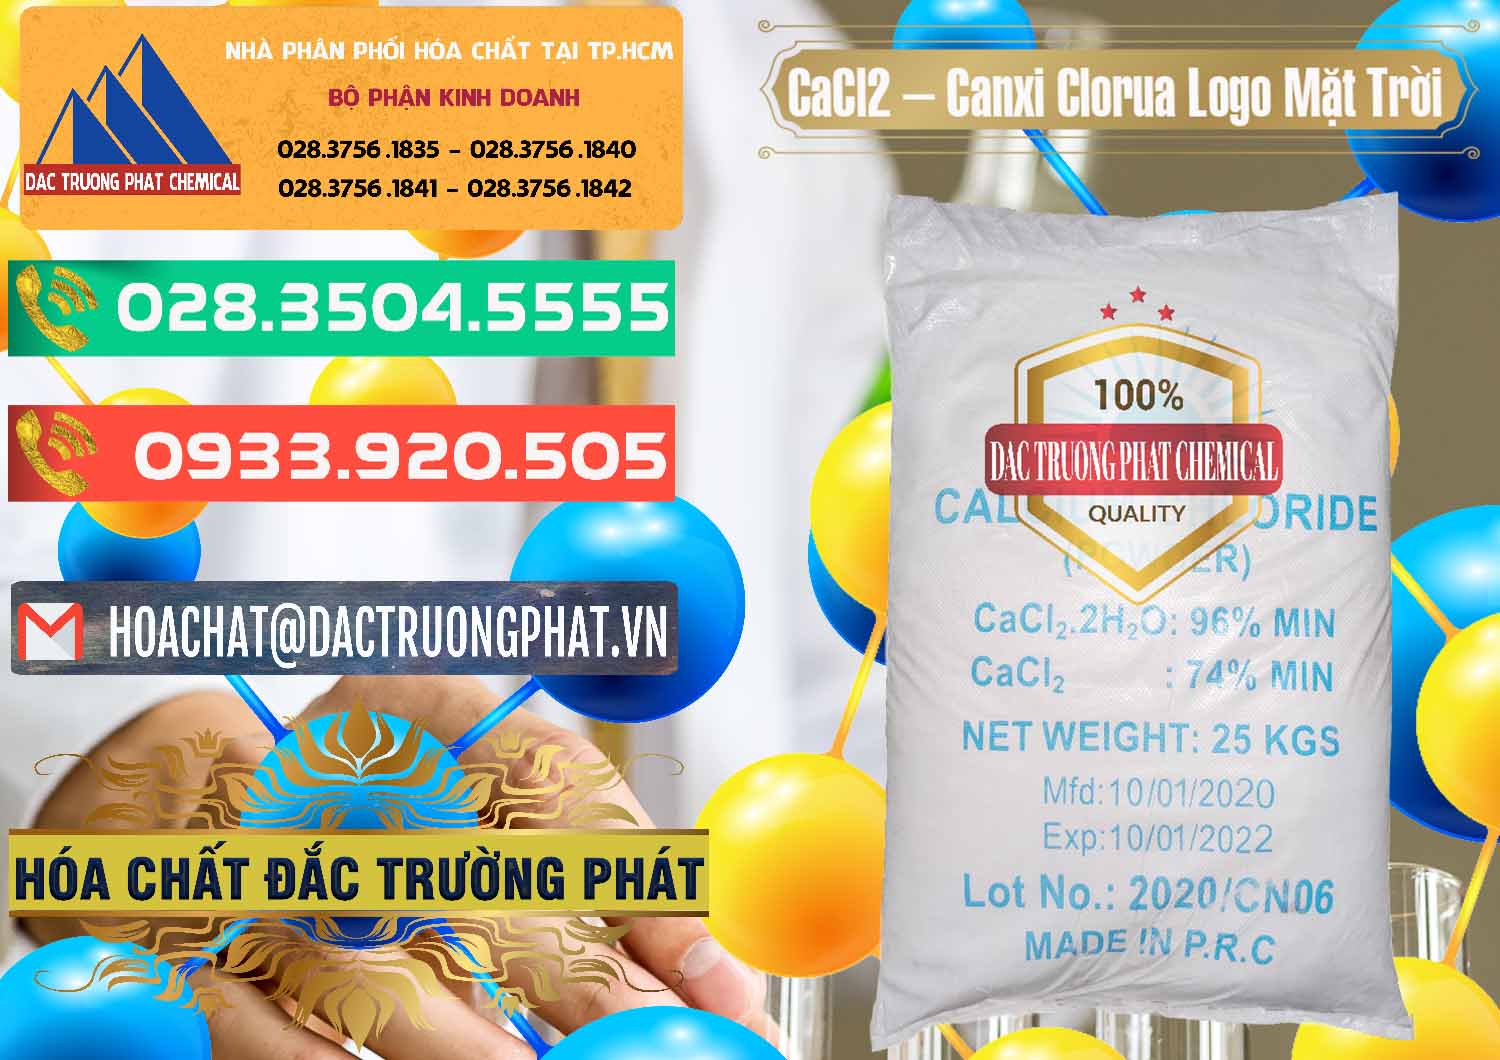 Phân phối - bán CaCl2 – Canxi Clorua 96% Logo Mặt Trời Trung Quốc China - 0041 - Nhà cung cấp - kinh doanh hóa chất tại TP.HCM - congtyhoachat.com.vn